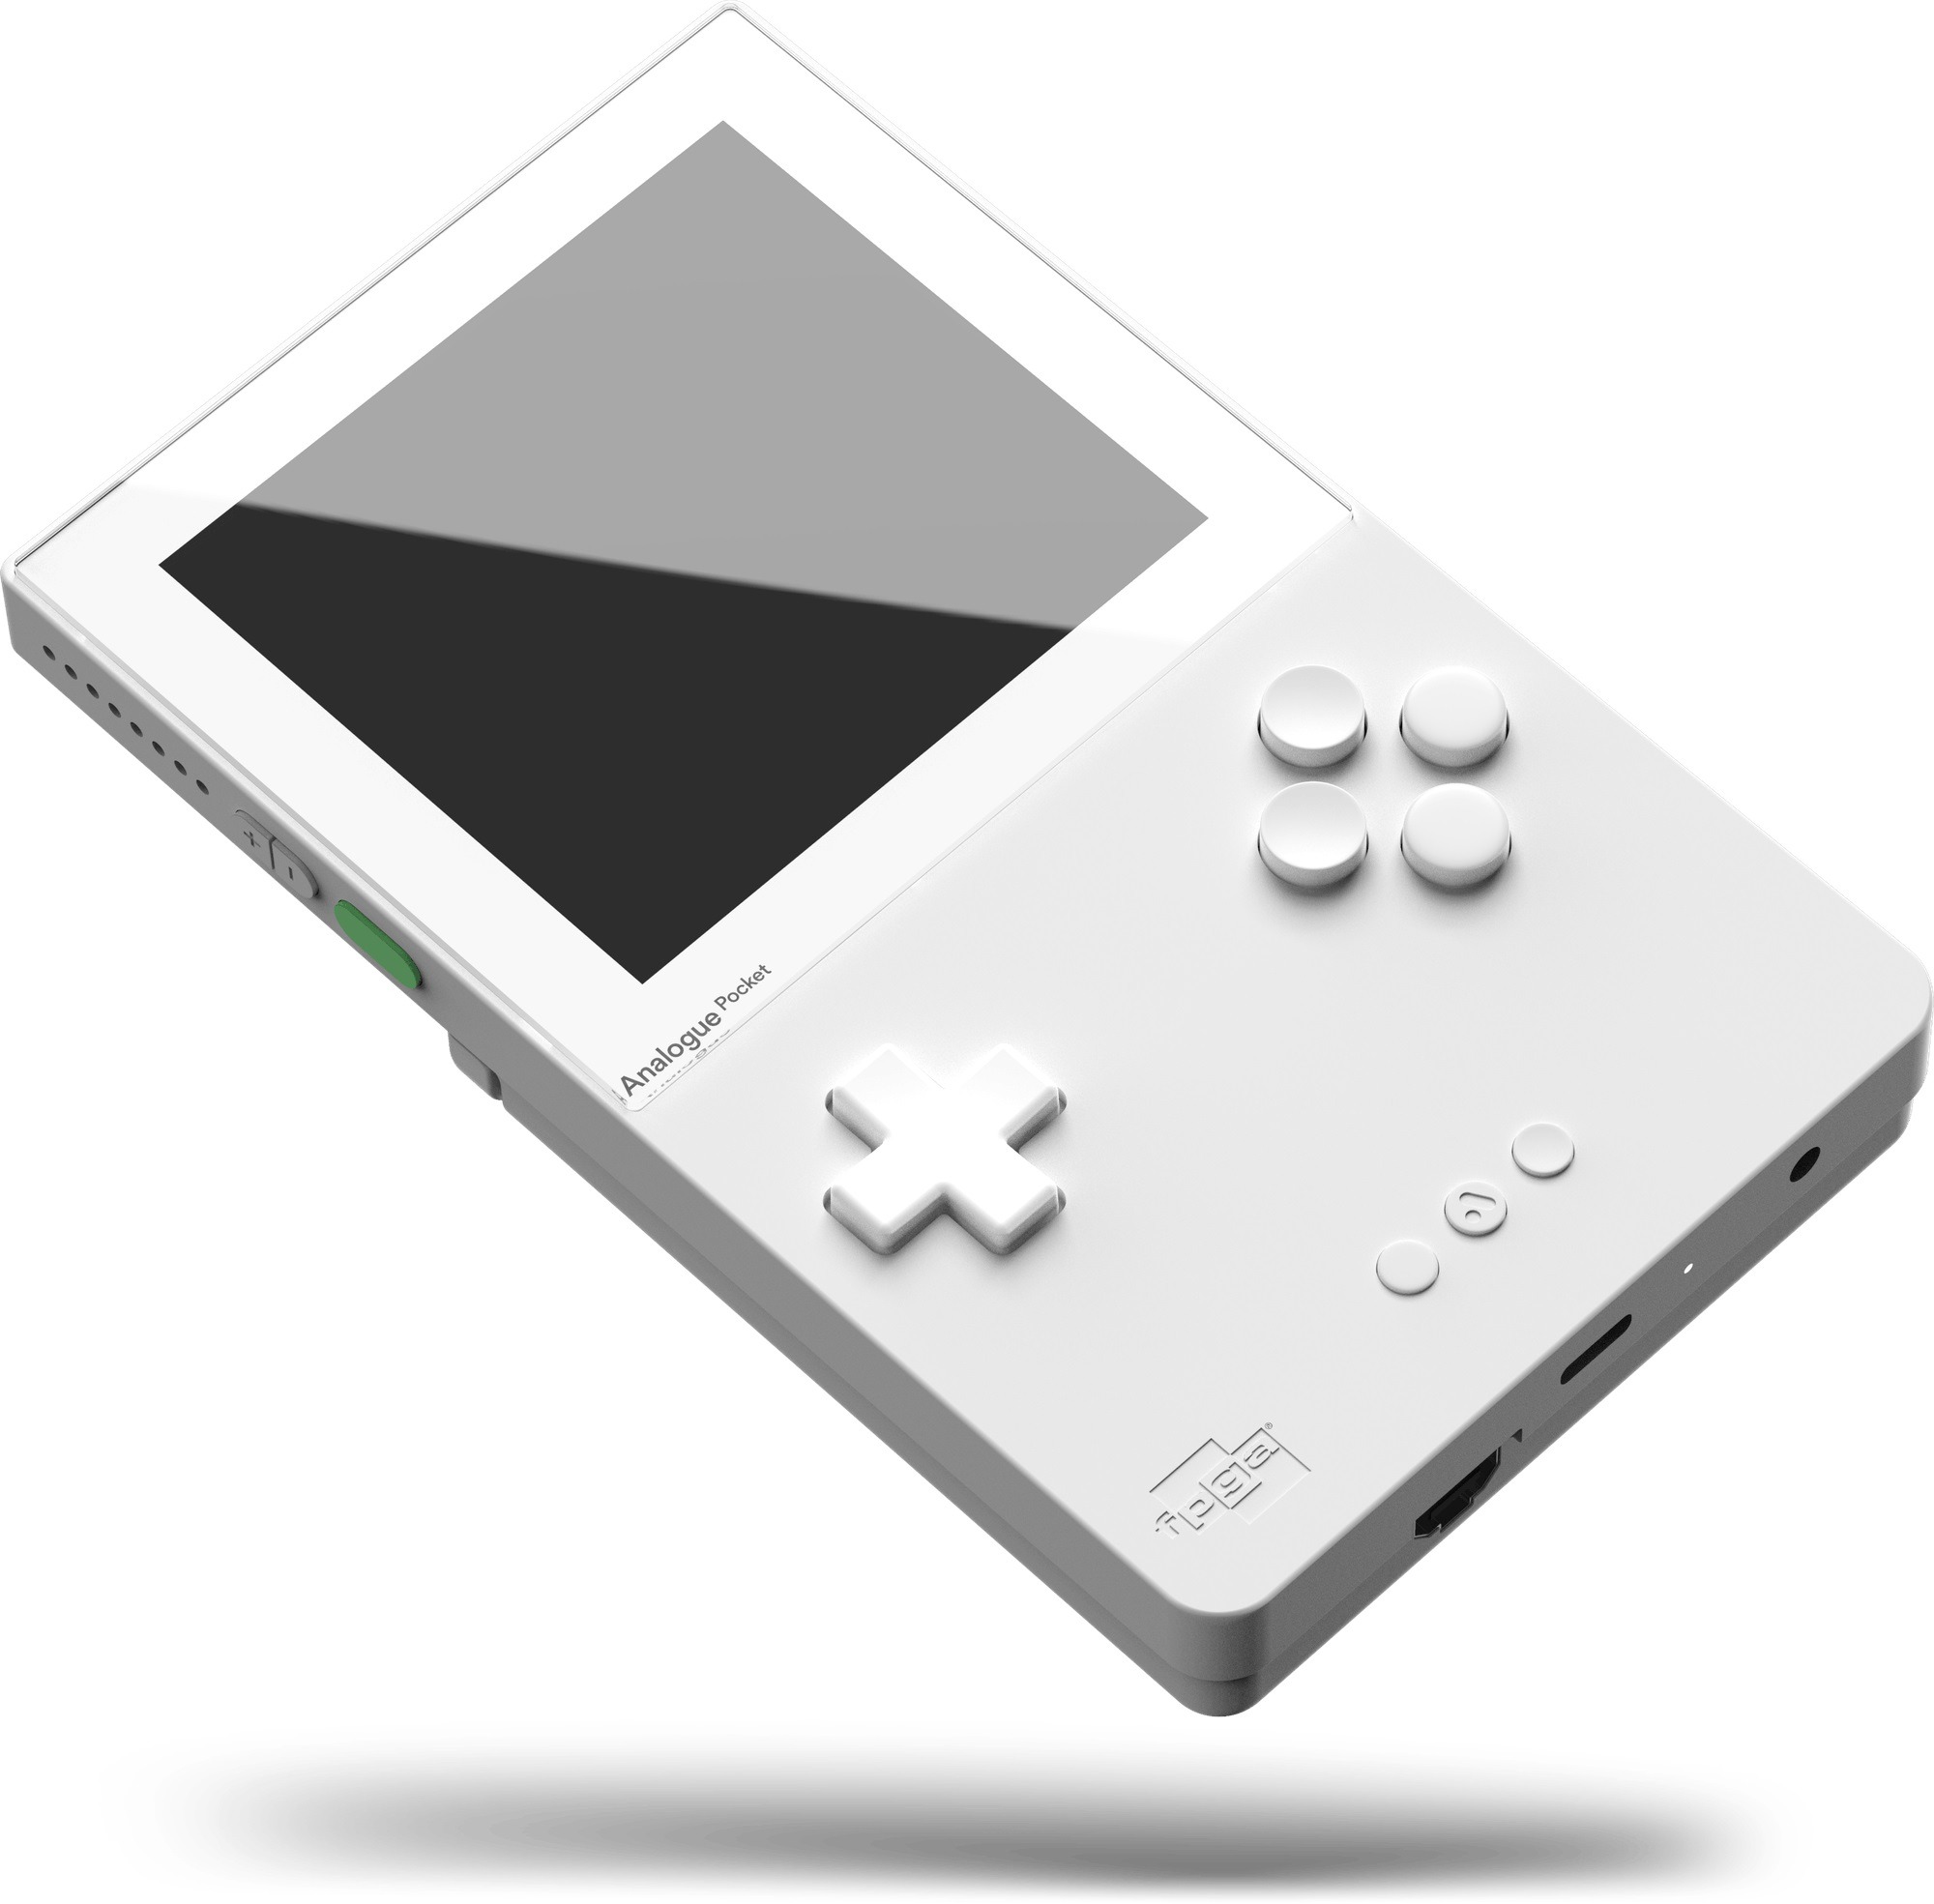 予約開始即完売のレトロ携帯ゲーム互換機 Analogue Pocket の更なる製造と転売対策が発表 Update Game Spark 国内 海外ゲーム情報サイト